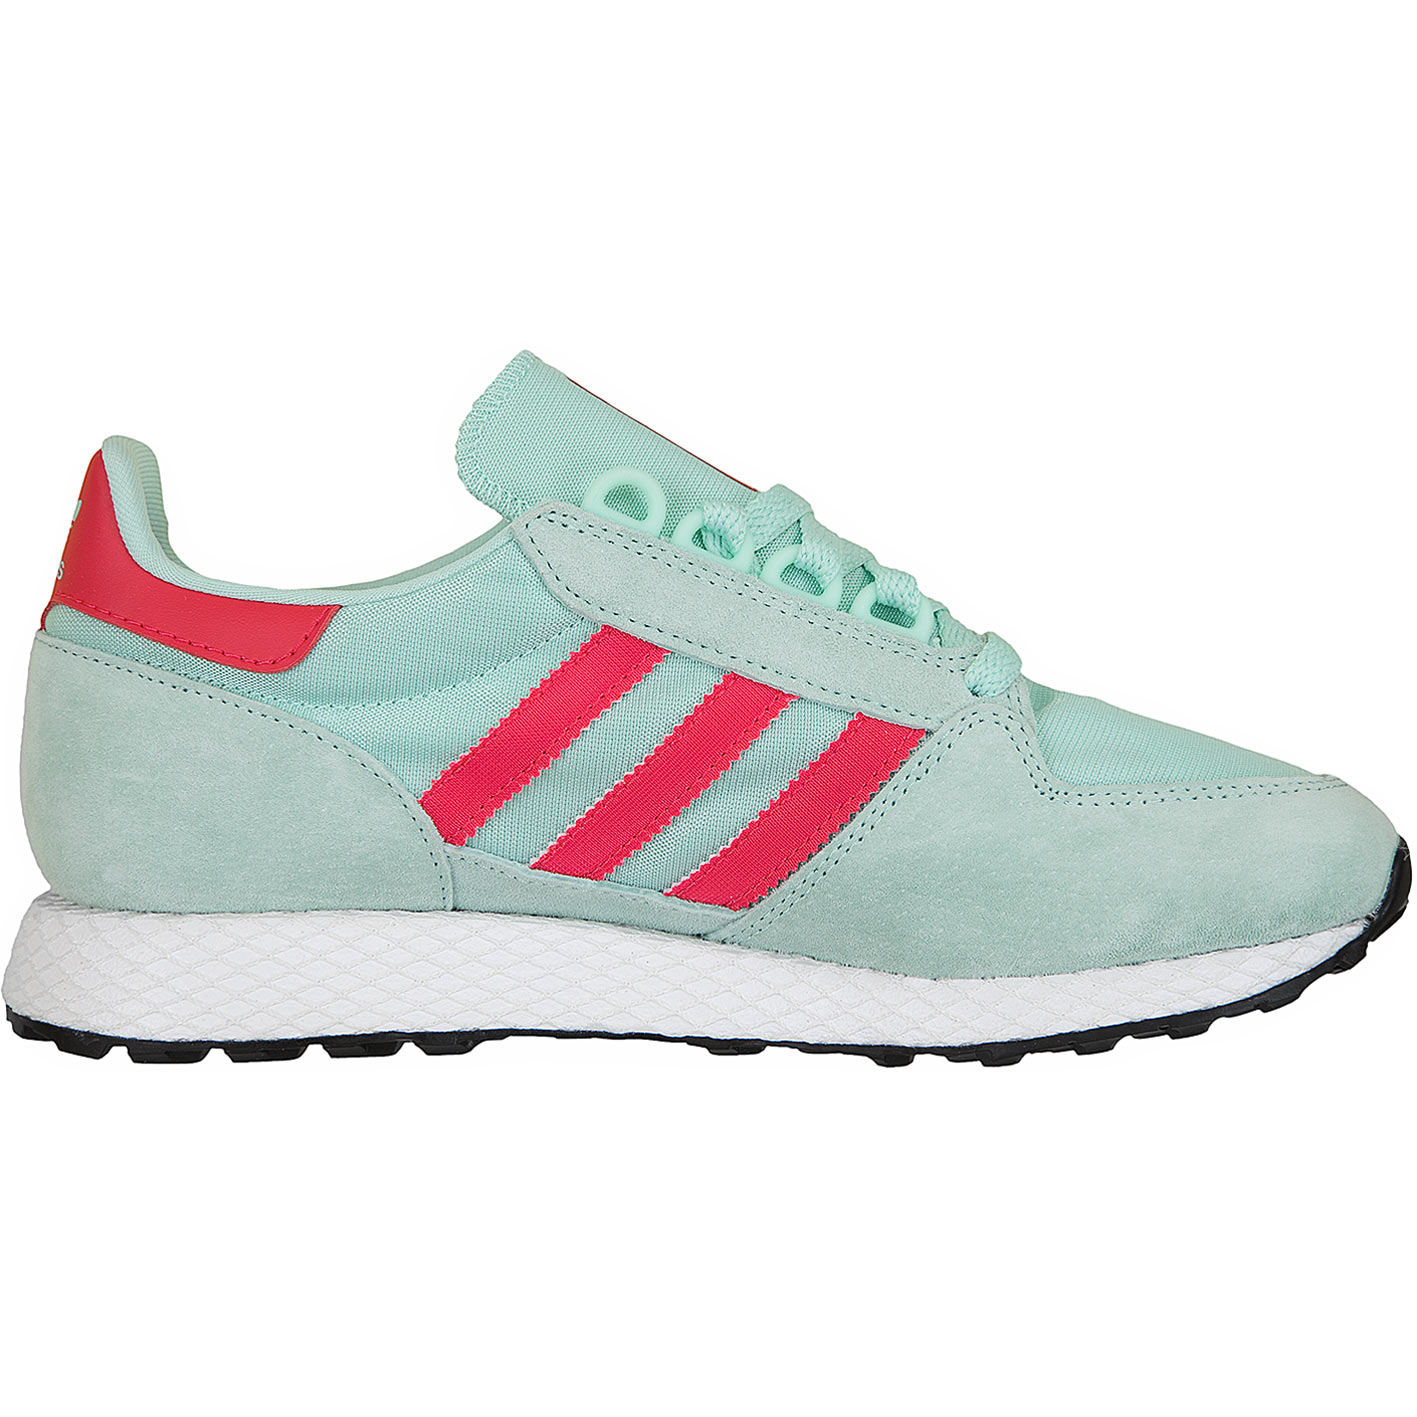 ☆ Adidas Originals Damen Sneaker Forest Grove mint/pink - hier bestellen!